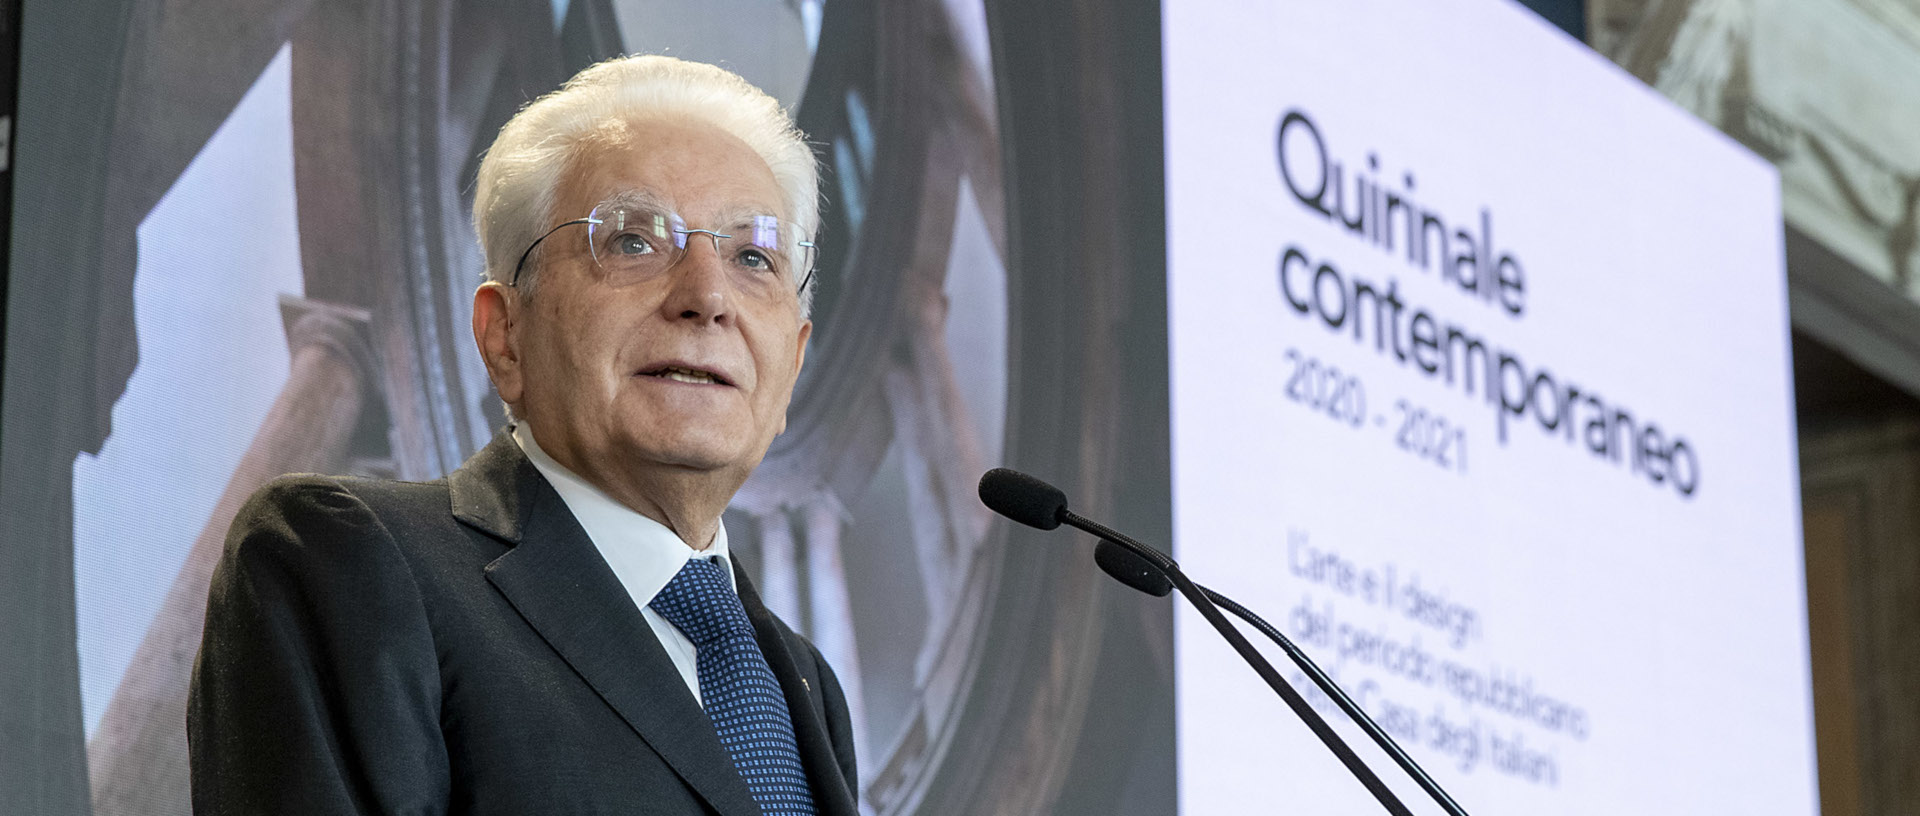 The President of the Italian Republic Sergio Mattarella inaugurates the "Quirinale Contemporaneo" project